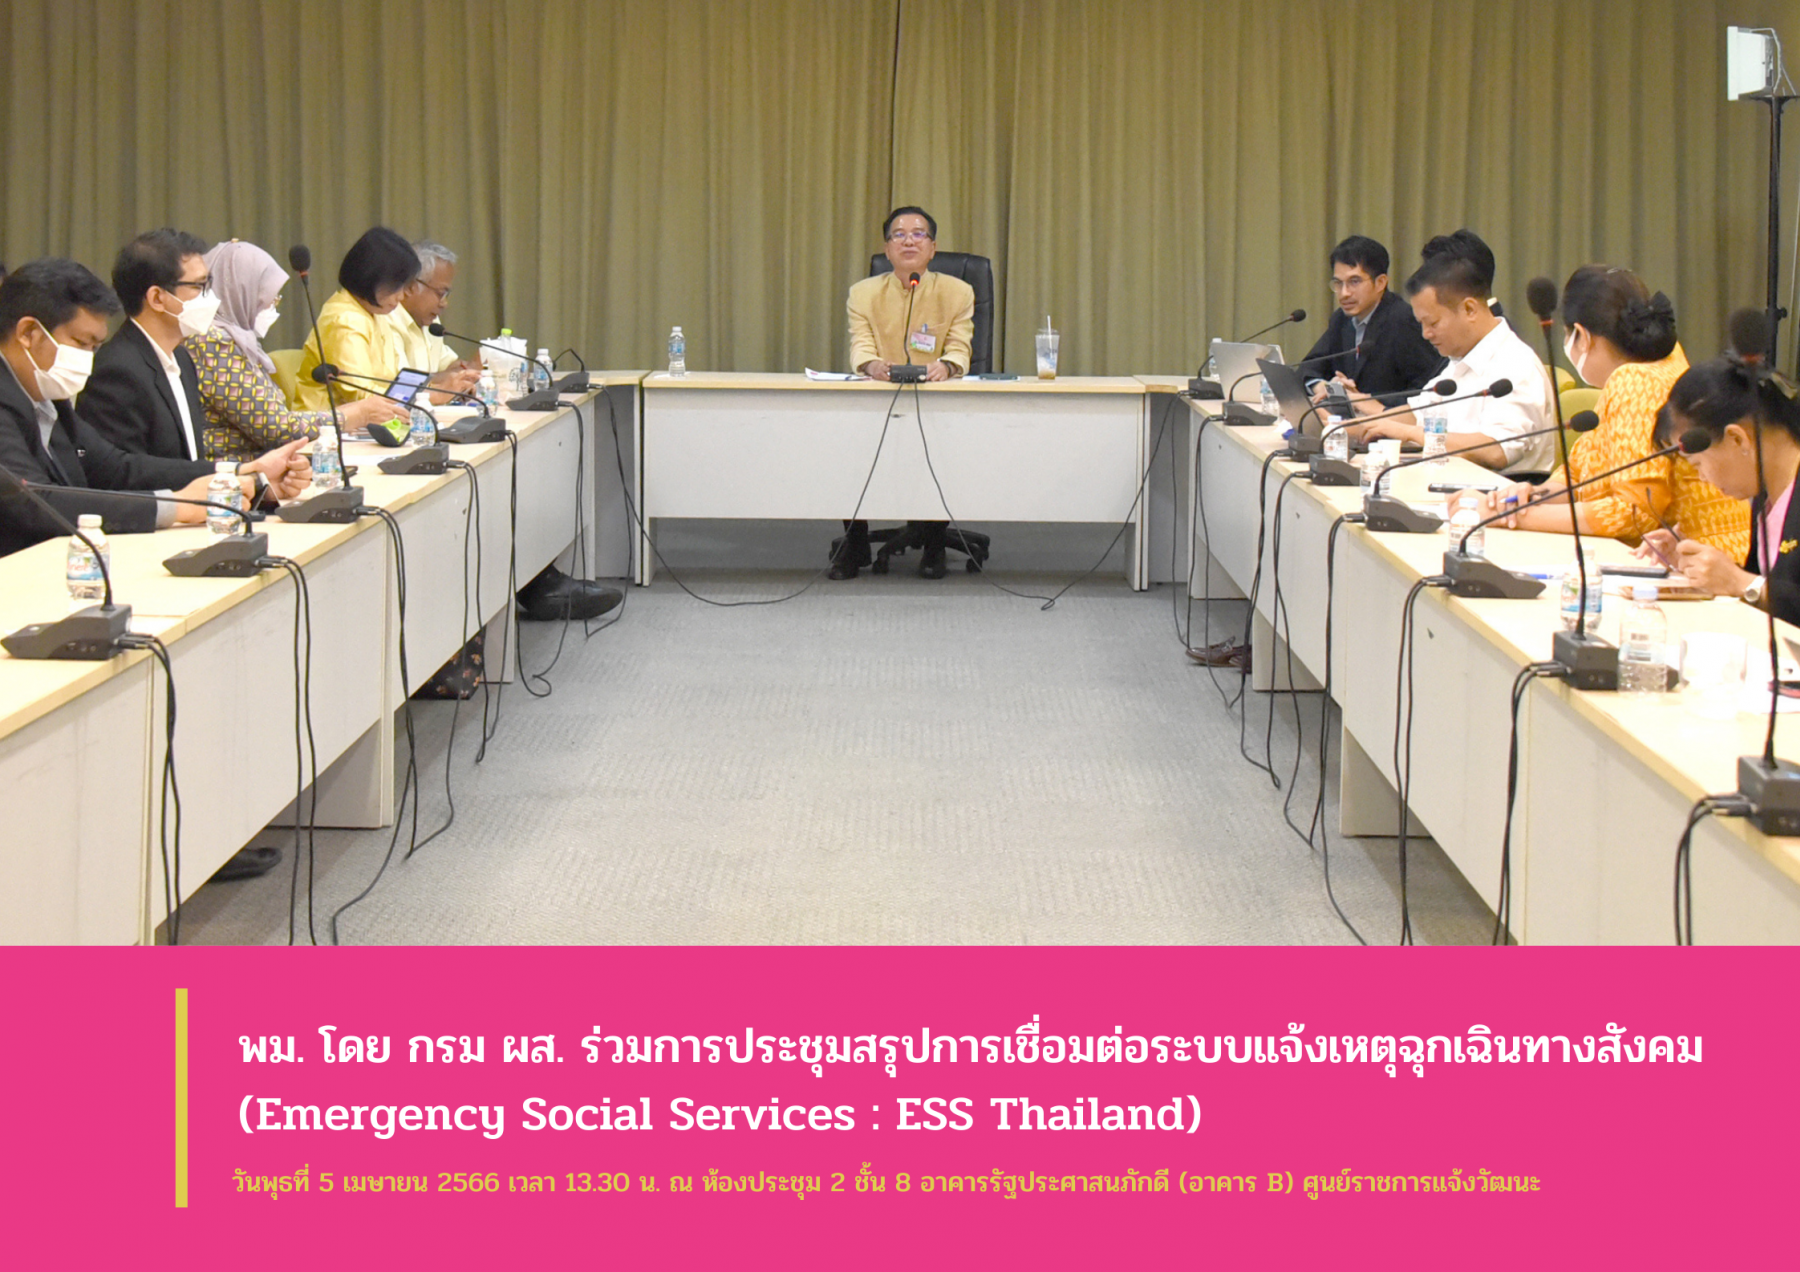 พม. โดย กรม ผส.เข้าร่วมการประชุมสรุปการเชื่อมต่อระบบแจ้งเหตุฉุกเฉินทางสังคม (Emergency Social Services : ESS Thailand)